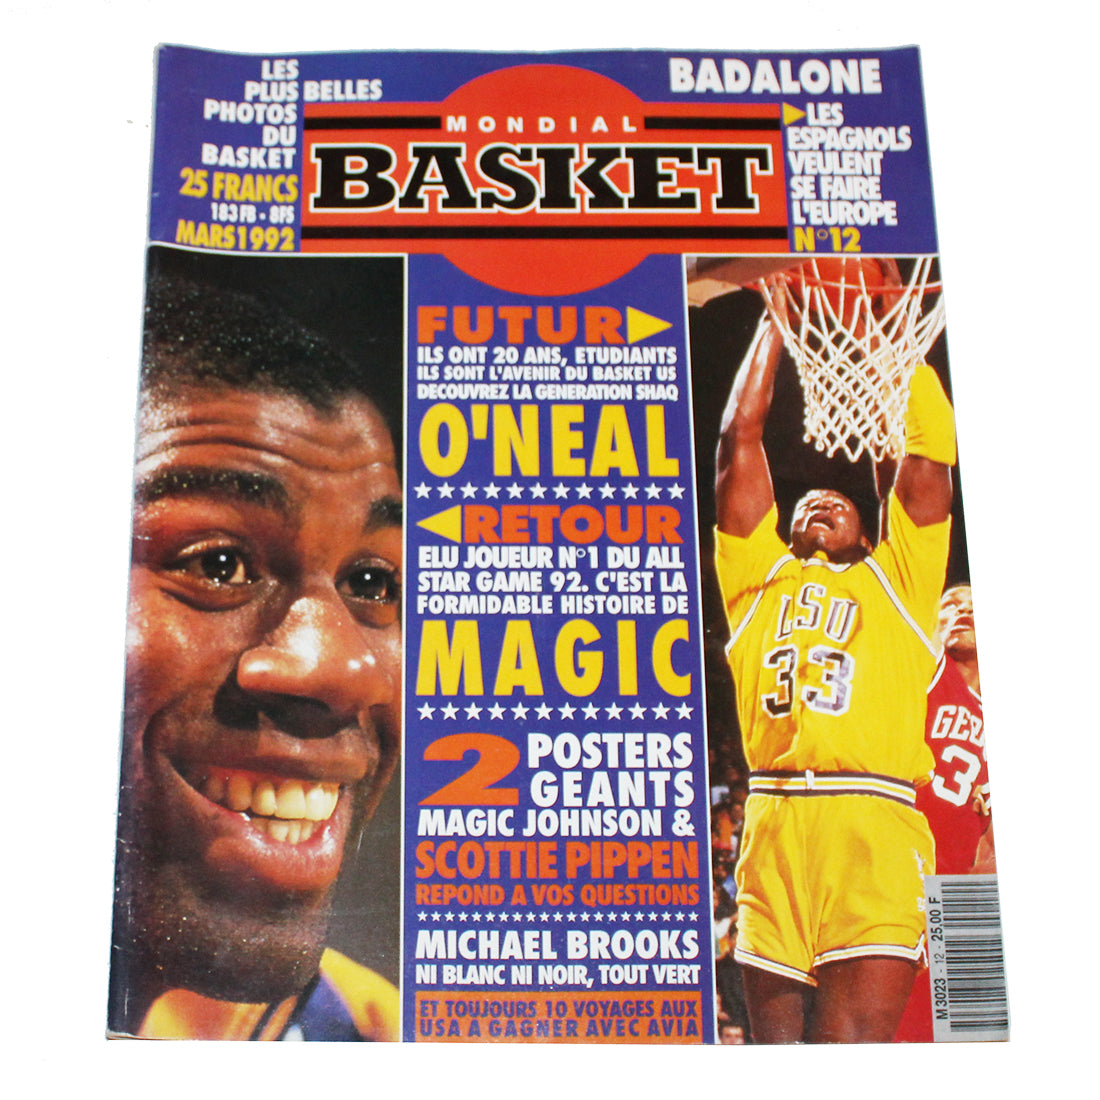 Magazine / revue Mondial Basket n° 12 mars 1992 ( sans les posters )